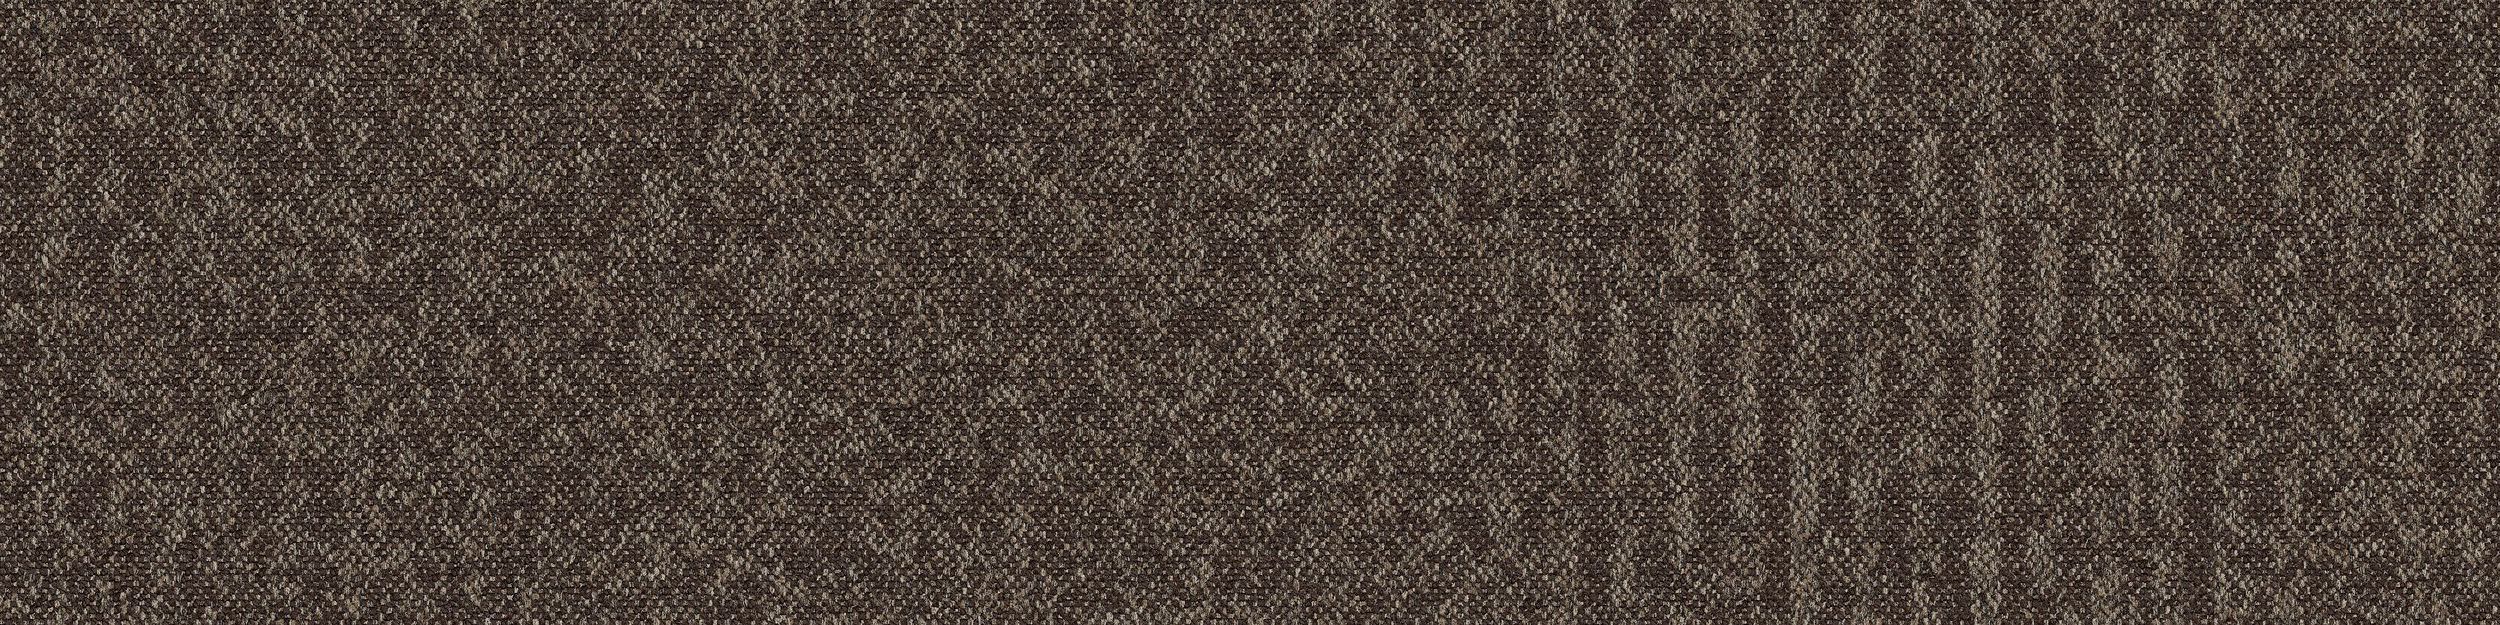 RMS 702 Carpet Tile In Dusk image number 2